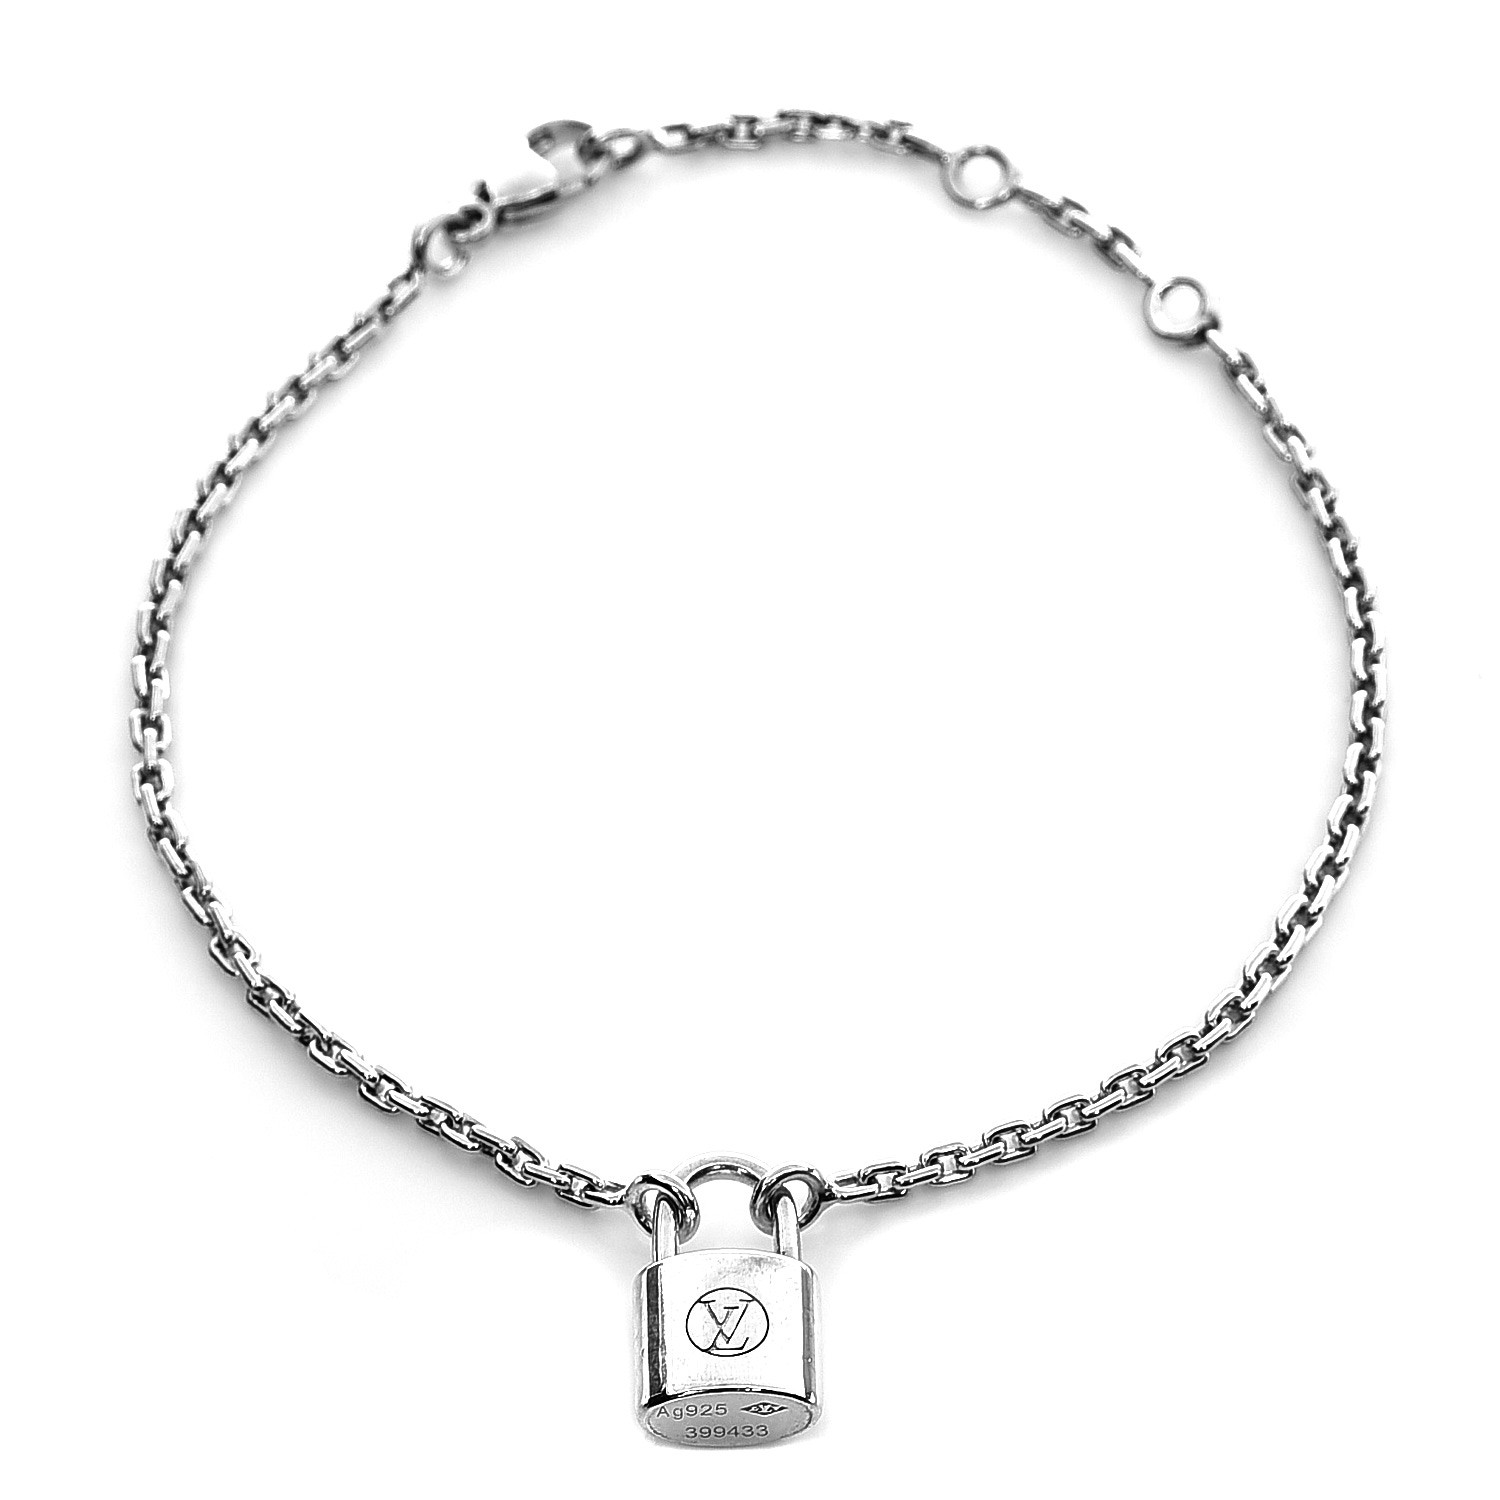 LOUIS VUITTON Bracelet Lockit Ag925 Silver Authentic E0061